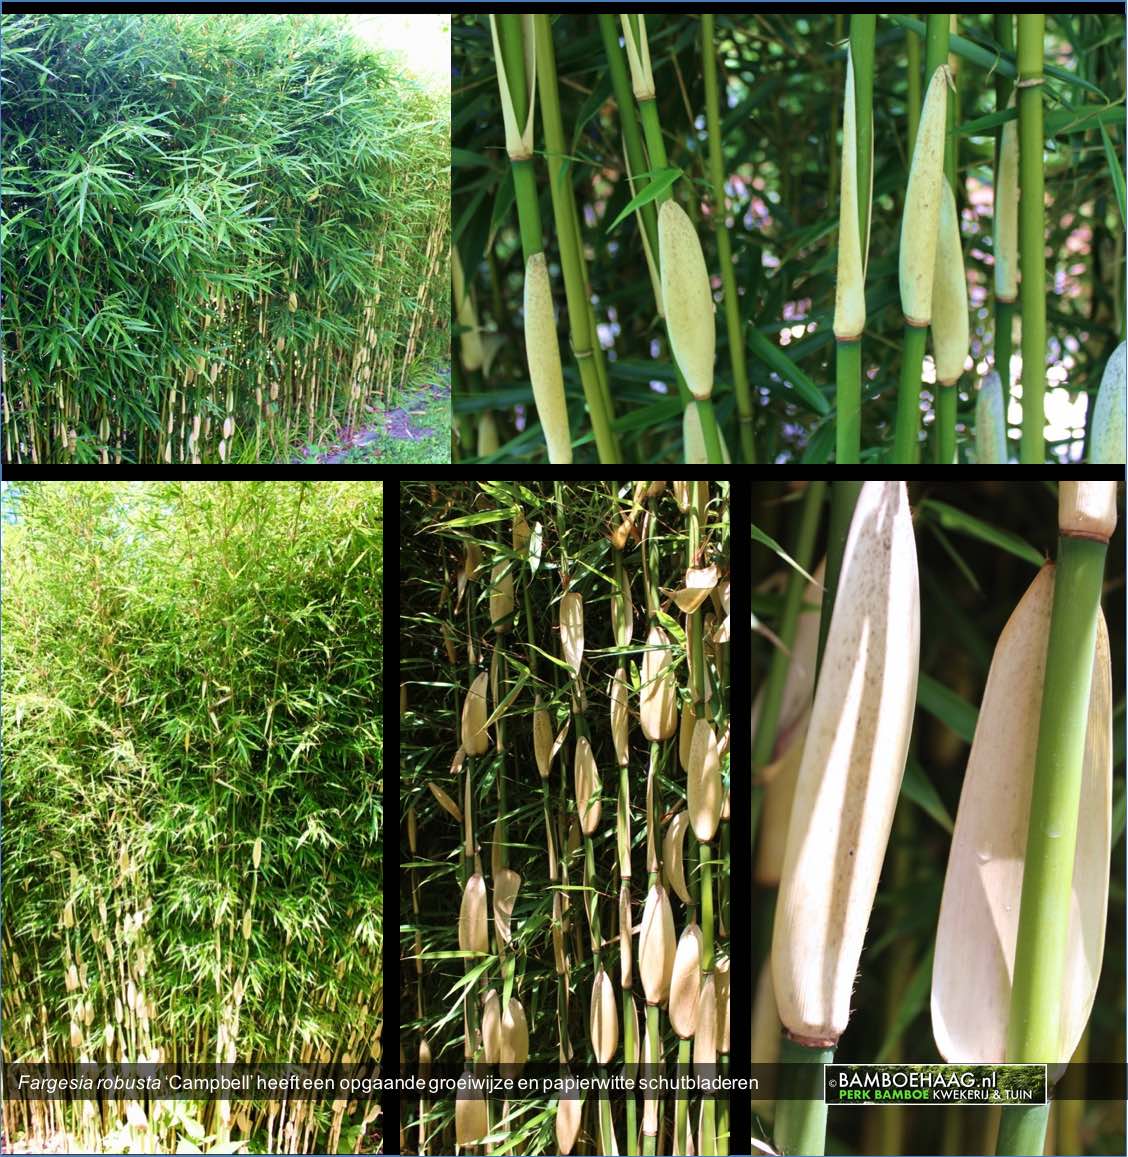 Fargesia robusta Campbell heeft een opgaande groeiwijze en papierwitte schutbladeren